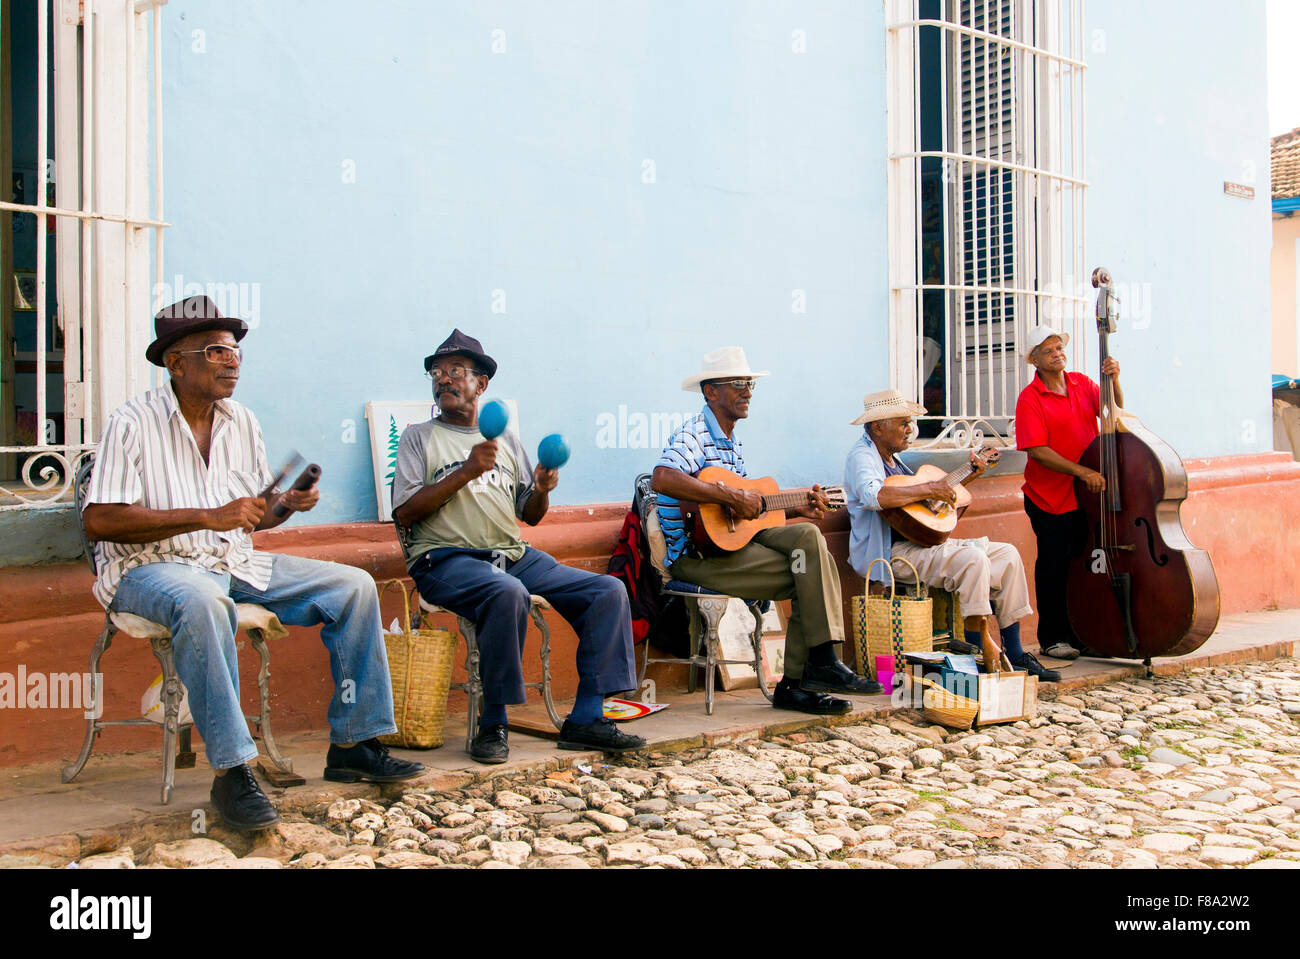 TRINIDAD, Kuba - 5. November 2015: Gruppe von Musiker spielen auf der Straße in Trinidad Kuba Stockfoto